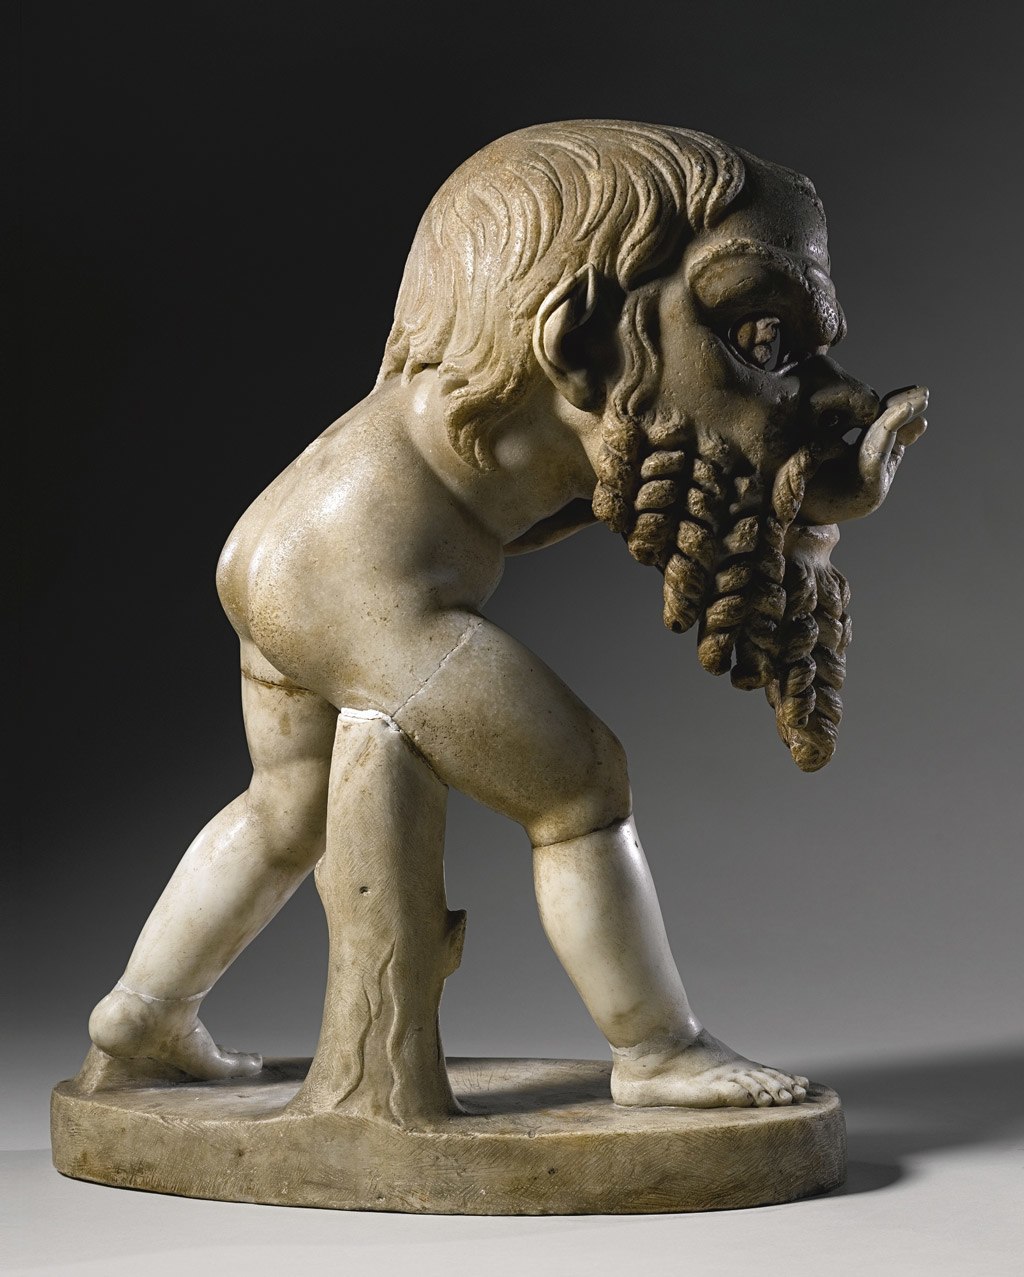 تمثال لأحد أتباع الاله (ديونيسوس) يرتدي قناع مسرح لـ(سيلينوس) يعود تاريخه إلى القرن الأول، نحاته مجهول، مع ترميم من قبل أليساندرو ألجاردي - معهد الفن في شيكاغو.